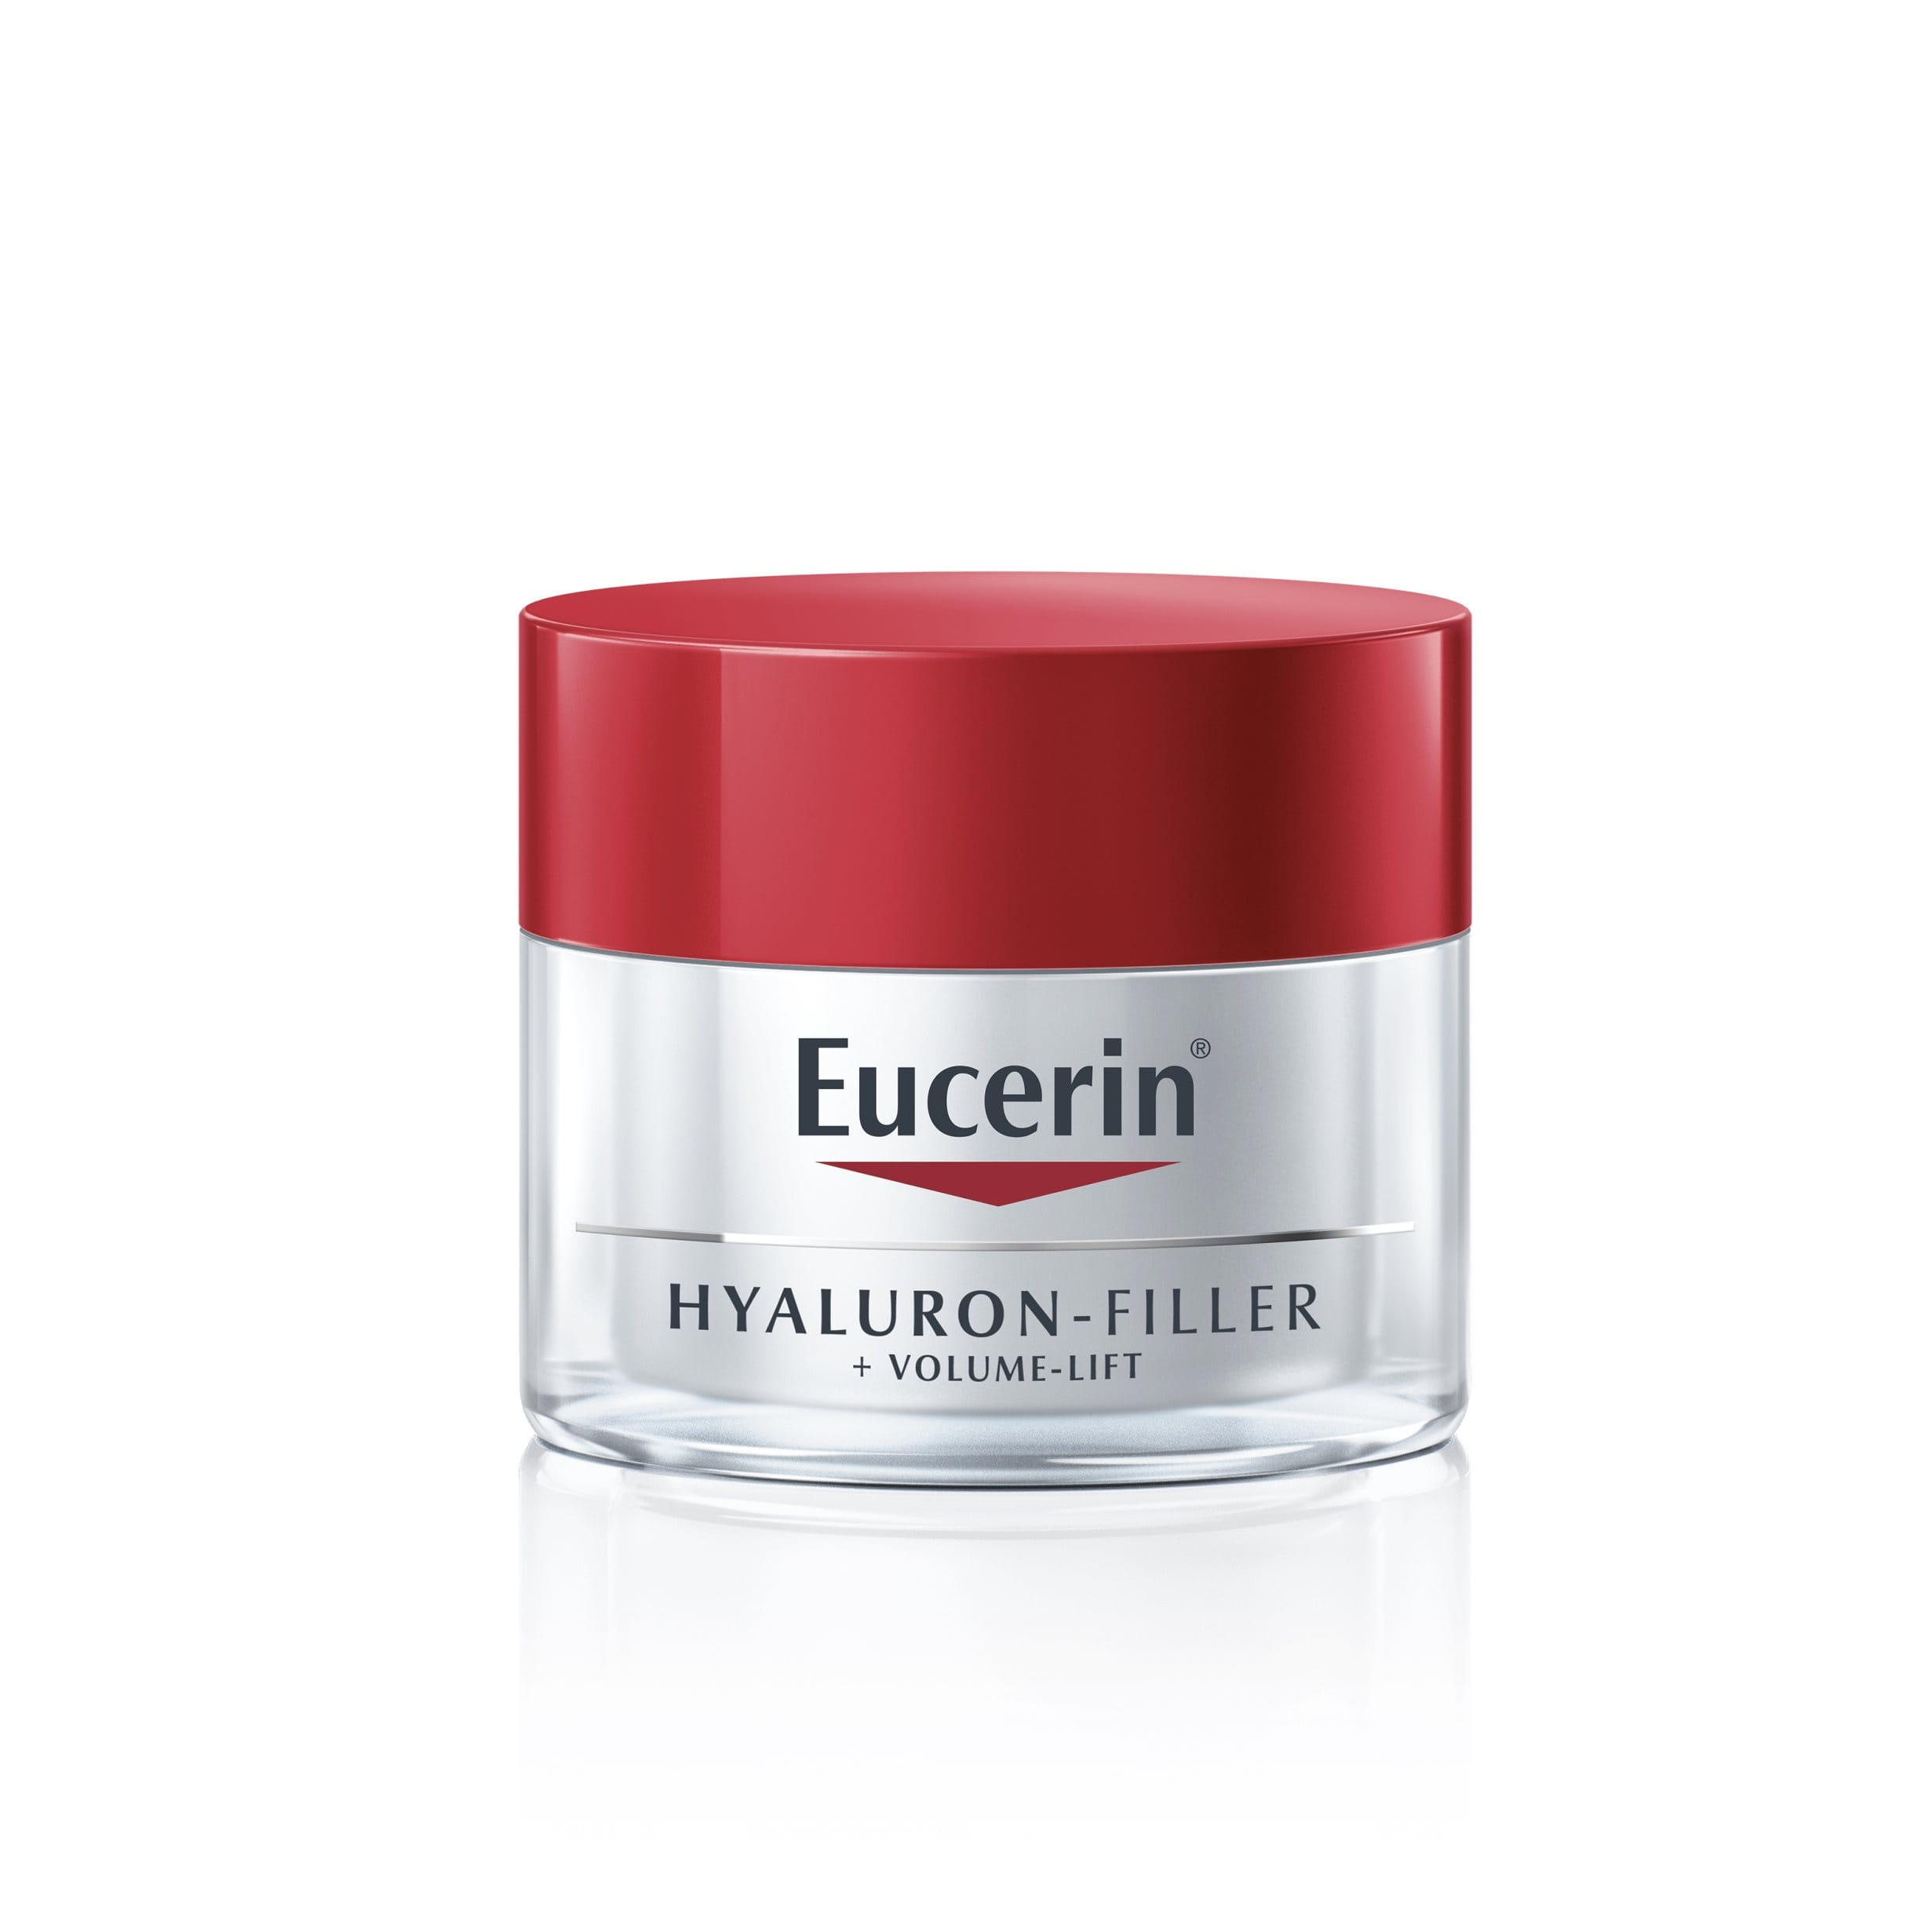 Eucerin Hyaluron-Filler + Volume-Lift Giorno
per pelli da normali a miste
